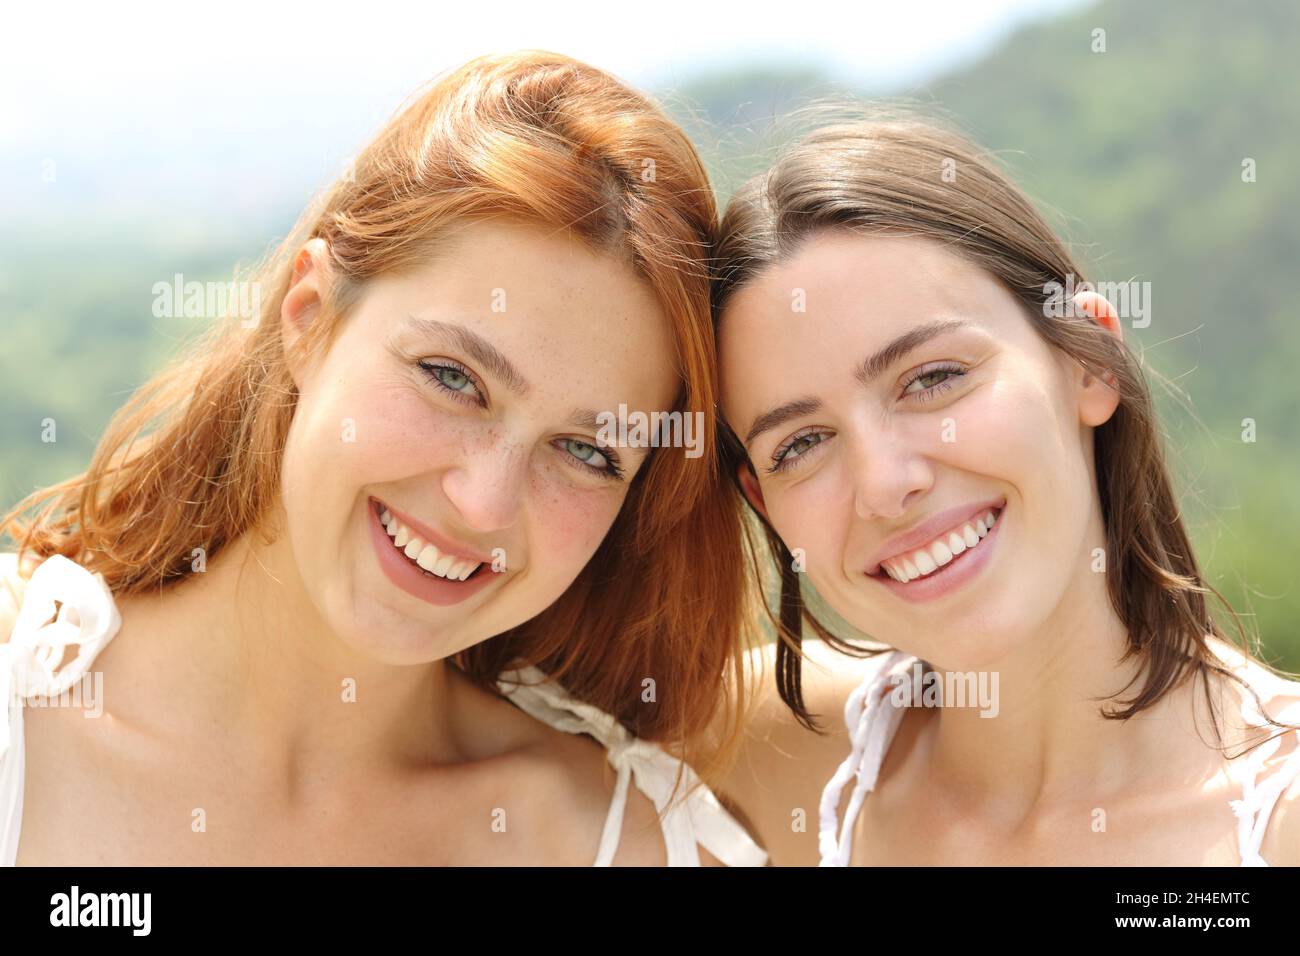 Vorderansicht Porträt von zwei glücklichen Freunden, die lächelnd auf die Kamera blicken Stockfoto